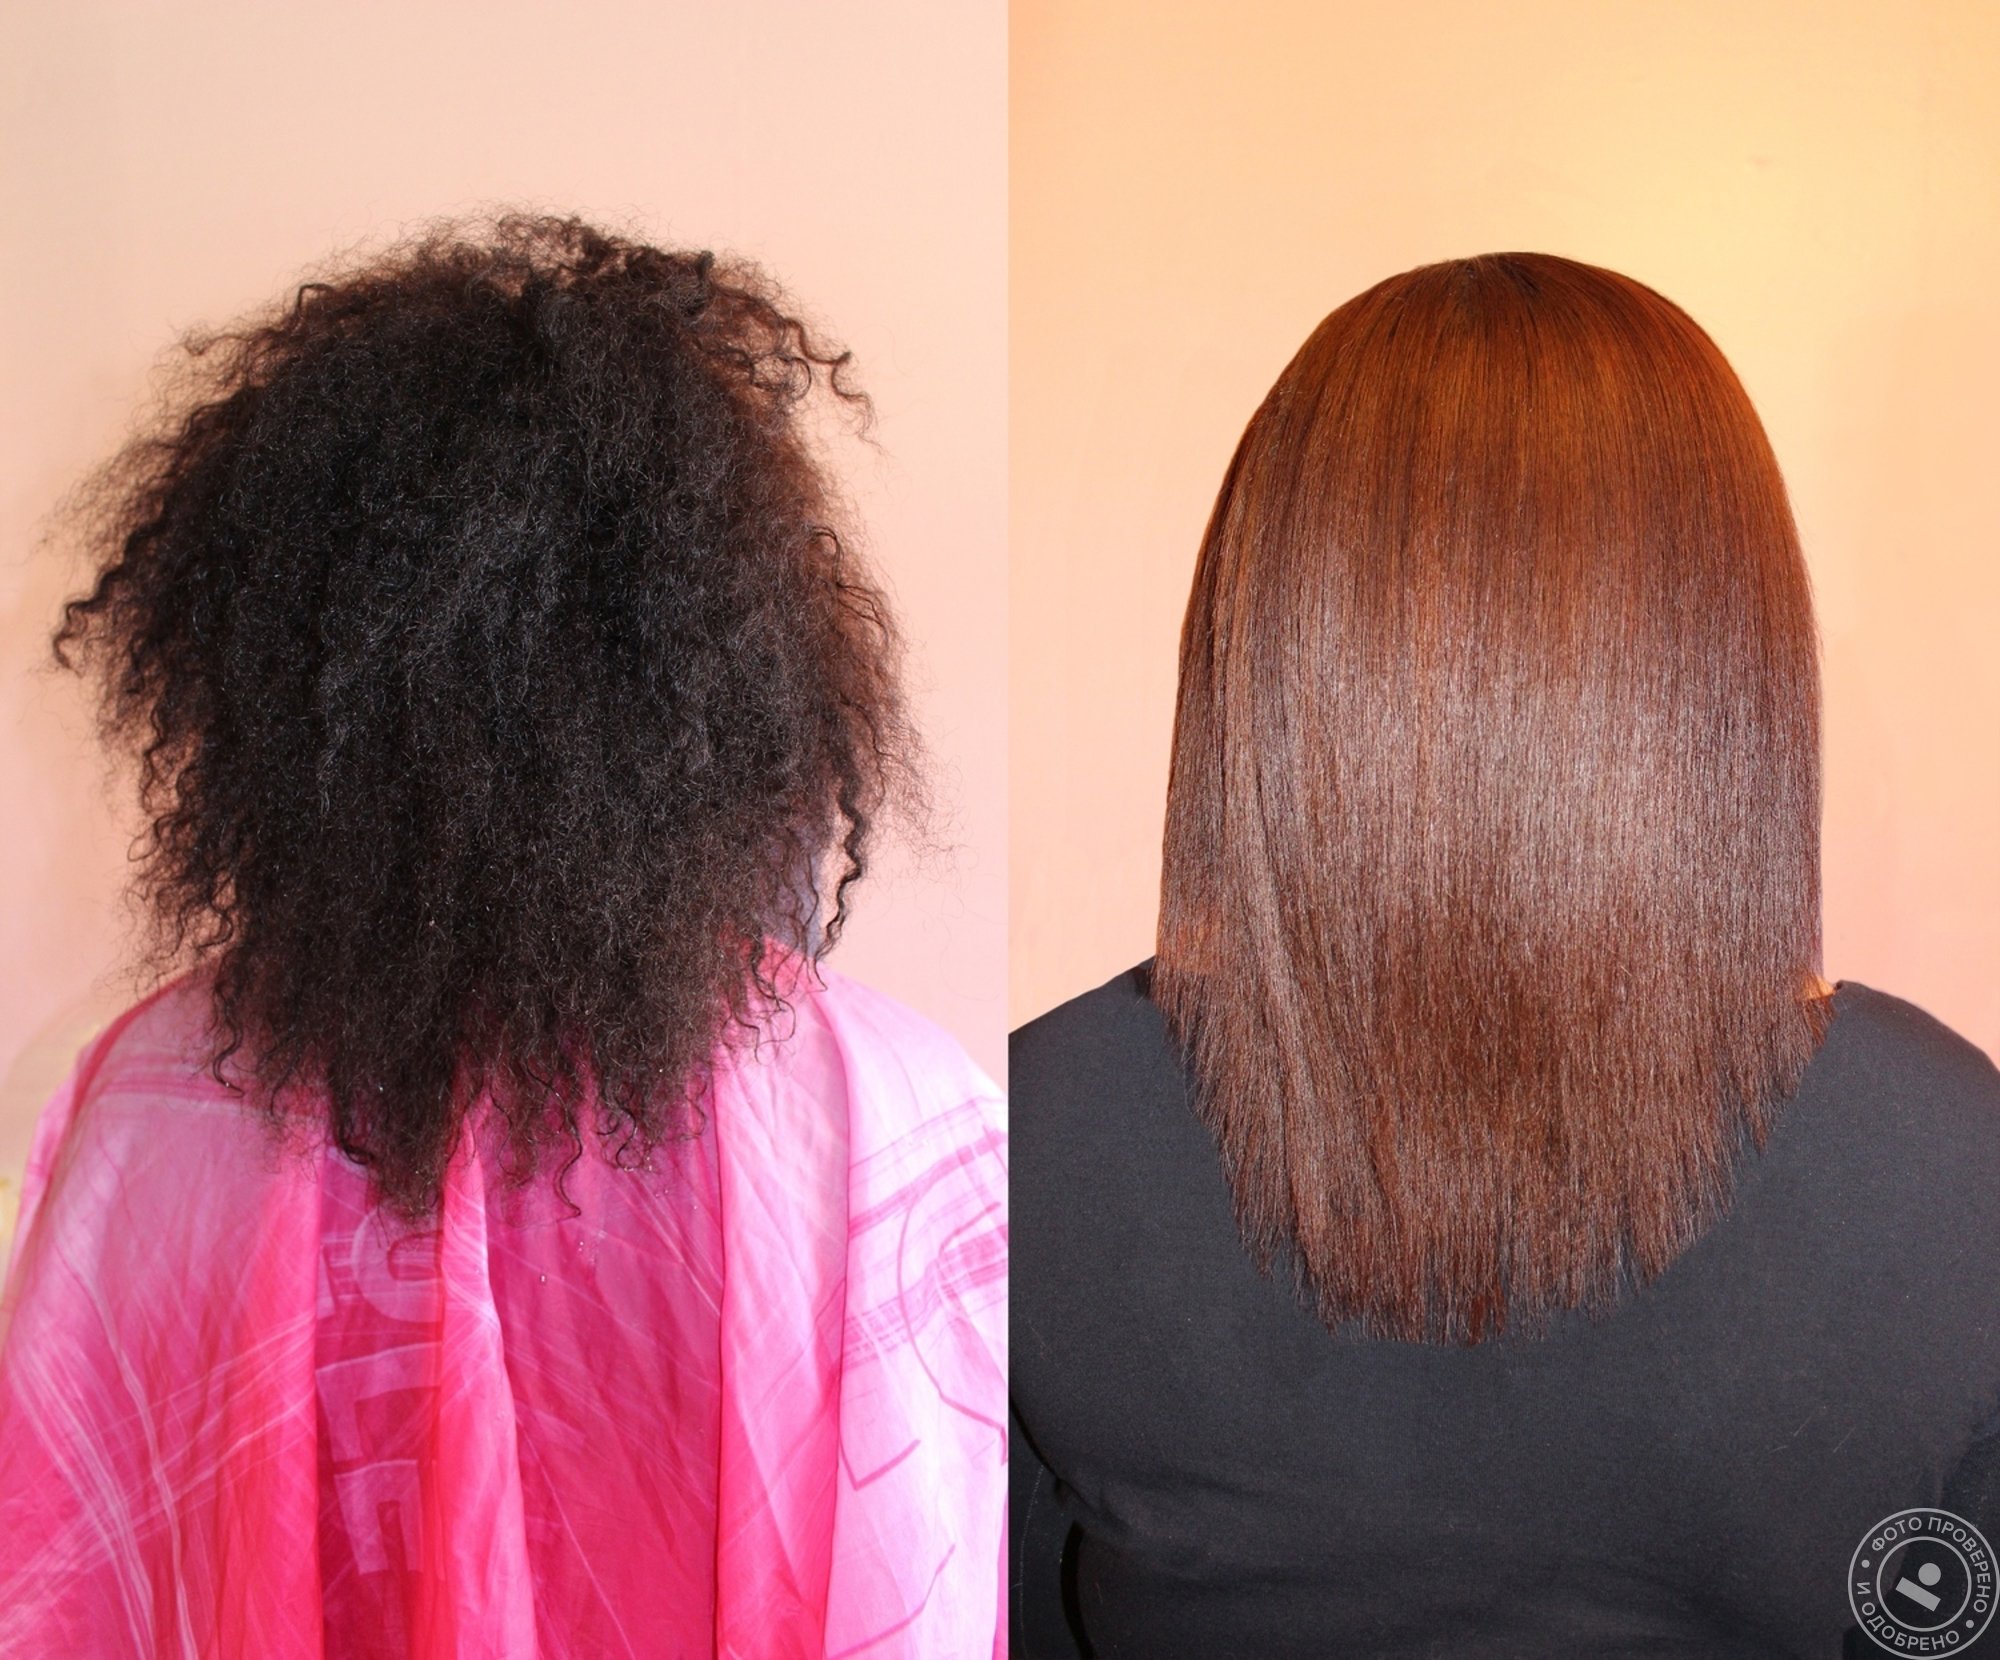 Волосы после кератинового выпрямления. Выпрямление волос до и после. Кератиновое выпрямление на густые волосы. Кератиновое выпрямление волос средней длины. Уход за волосами после кератинового выпрямления волос